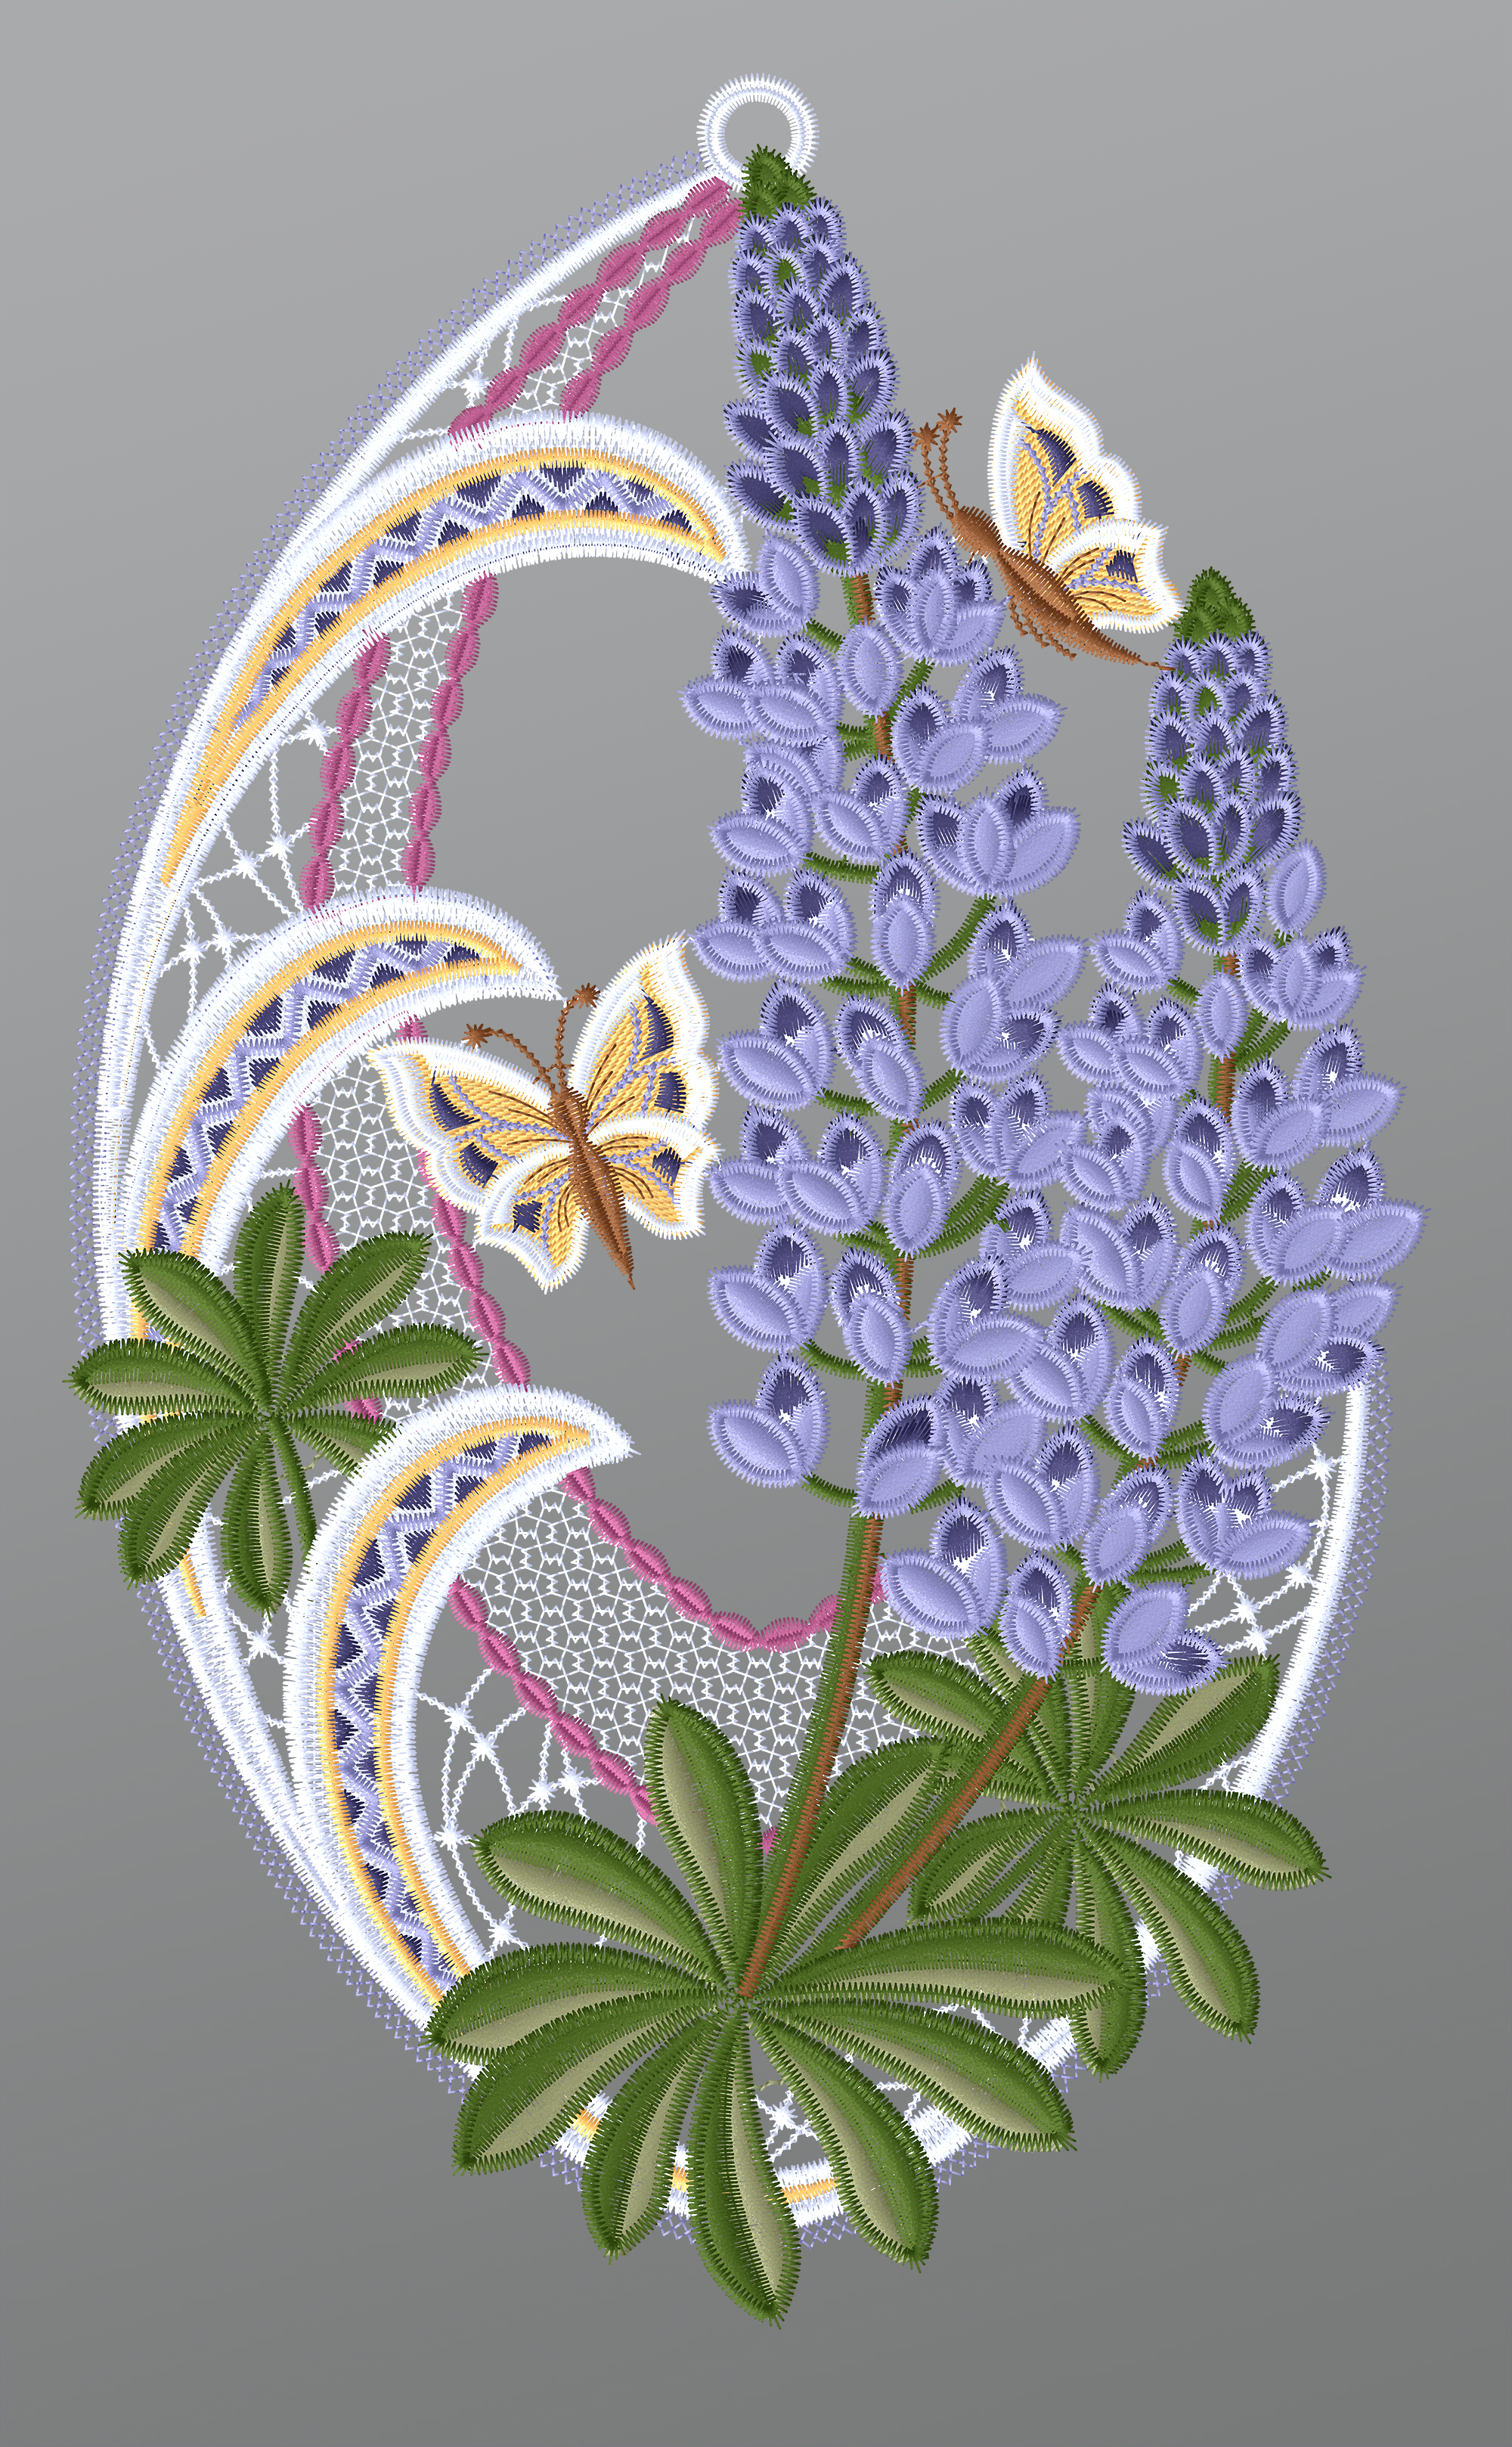 ArtikelbildFensterbild aus Plauener Spitze - Lupinen mit Schmetterlingen #1W in Violett-mehrfarbig